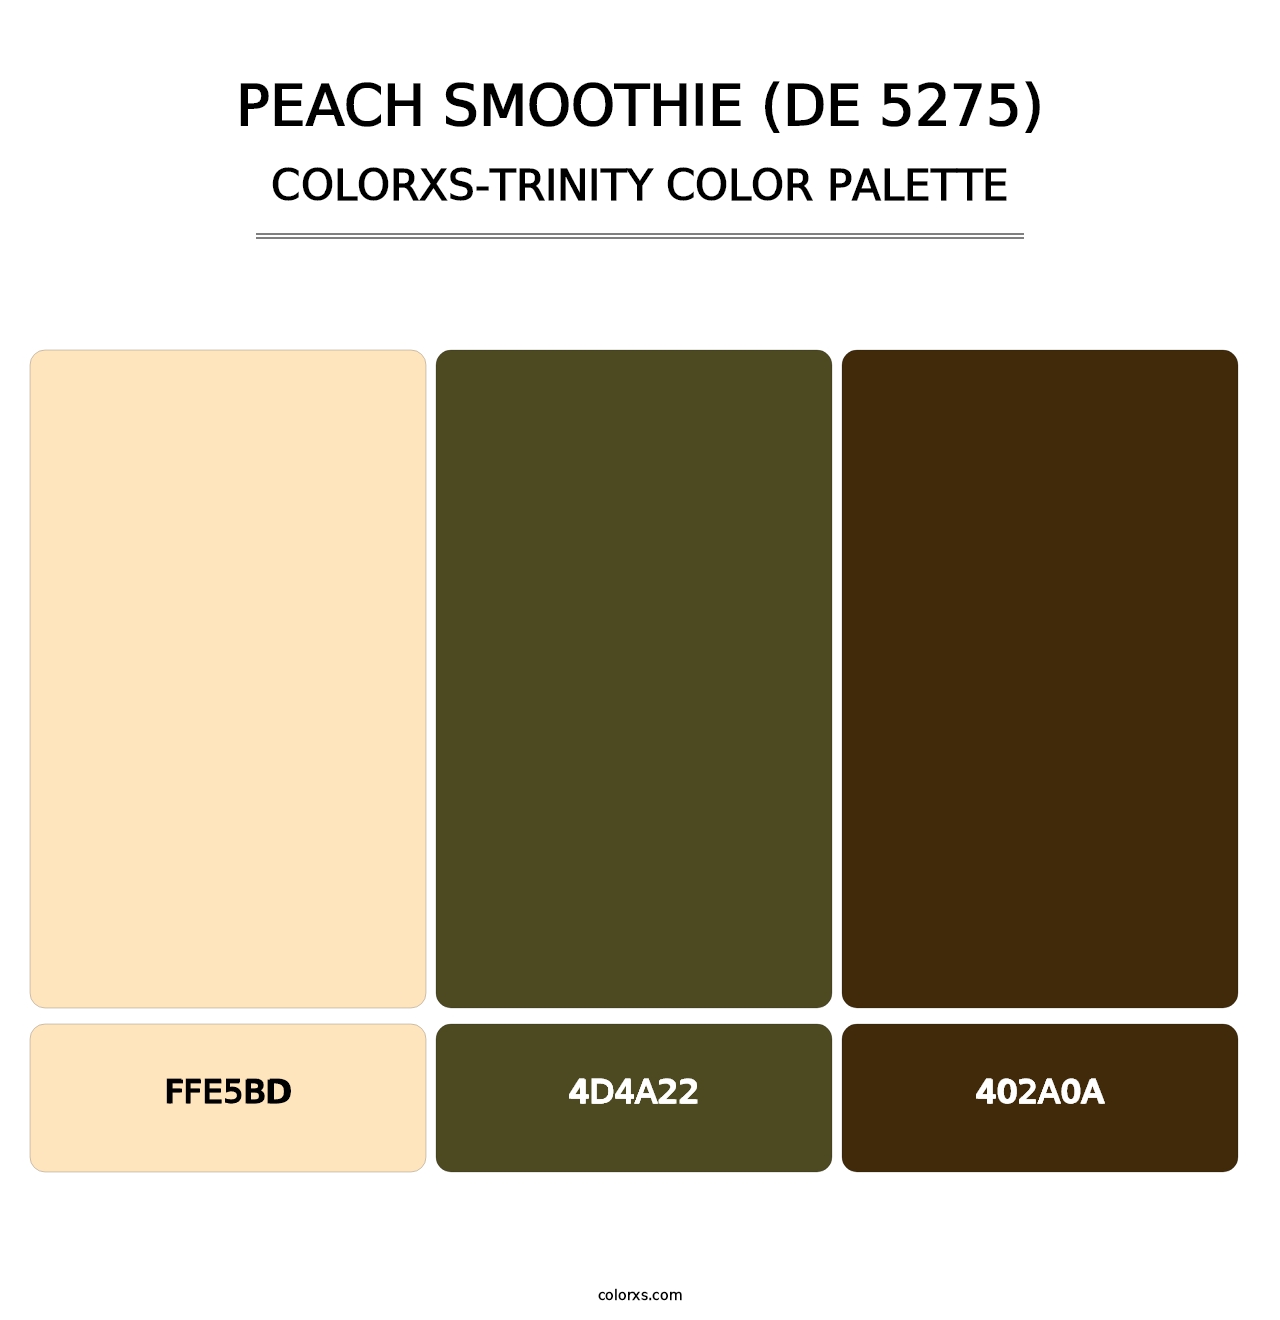 Peach Smoothie (DE 5275) - Colorxs Trinity Palette